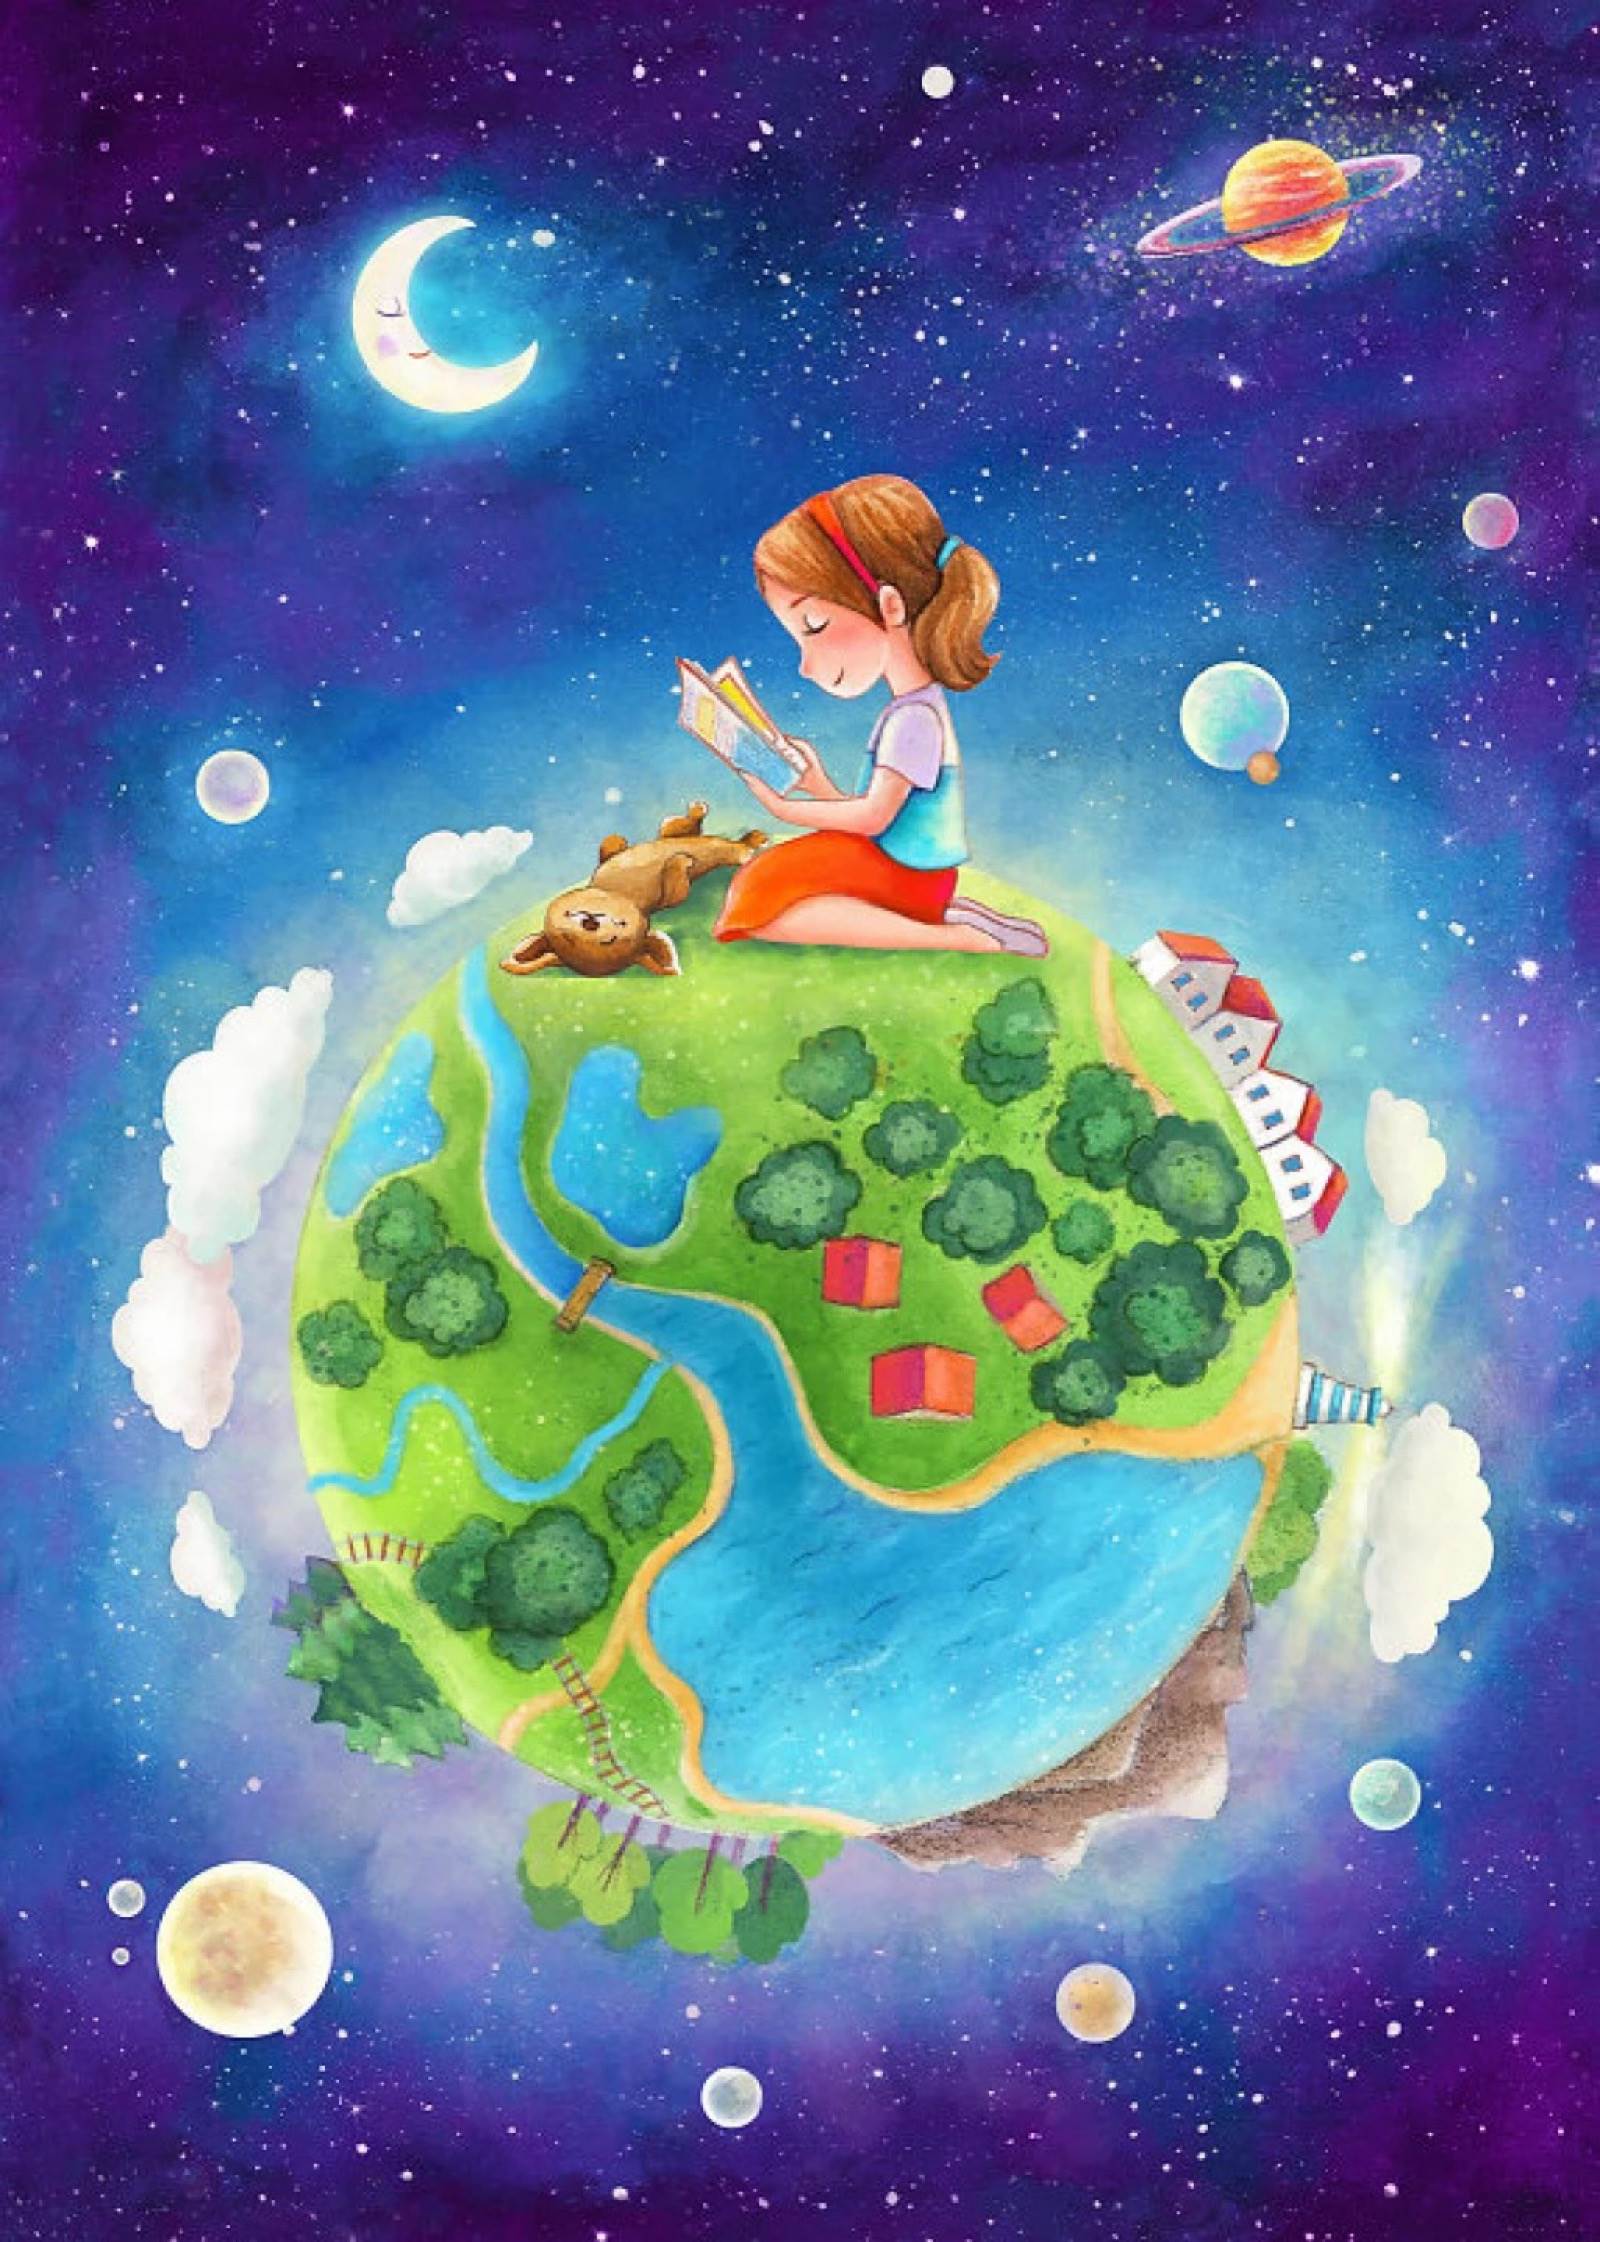 世界地球日儿童画公益作品 - 毛毛简笔画